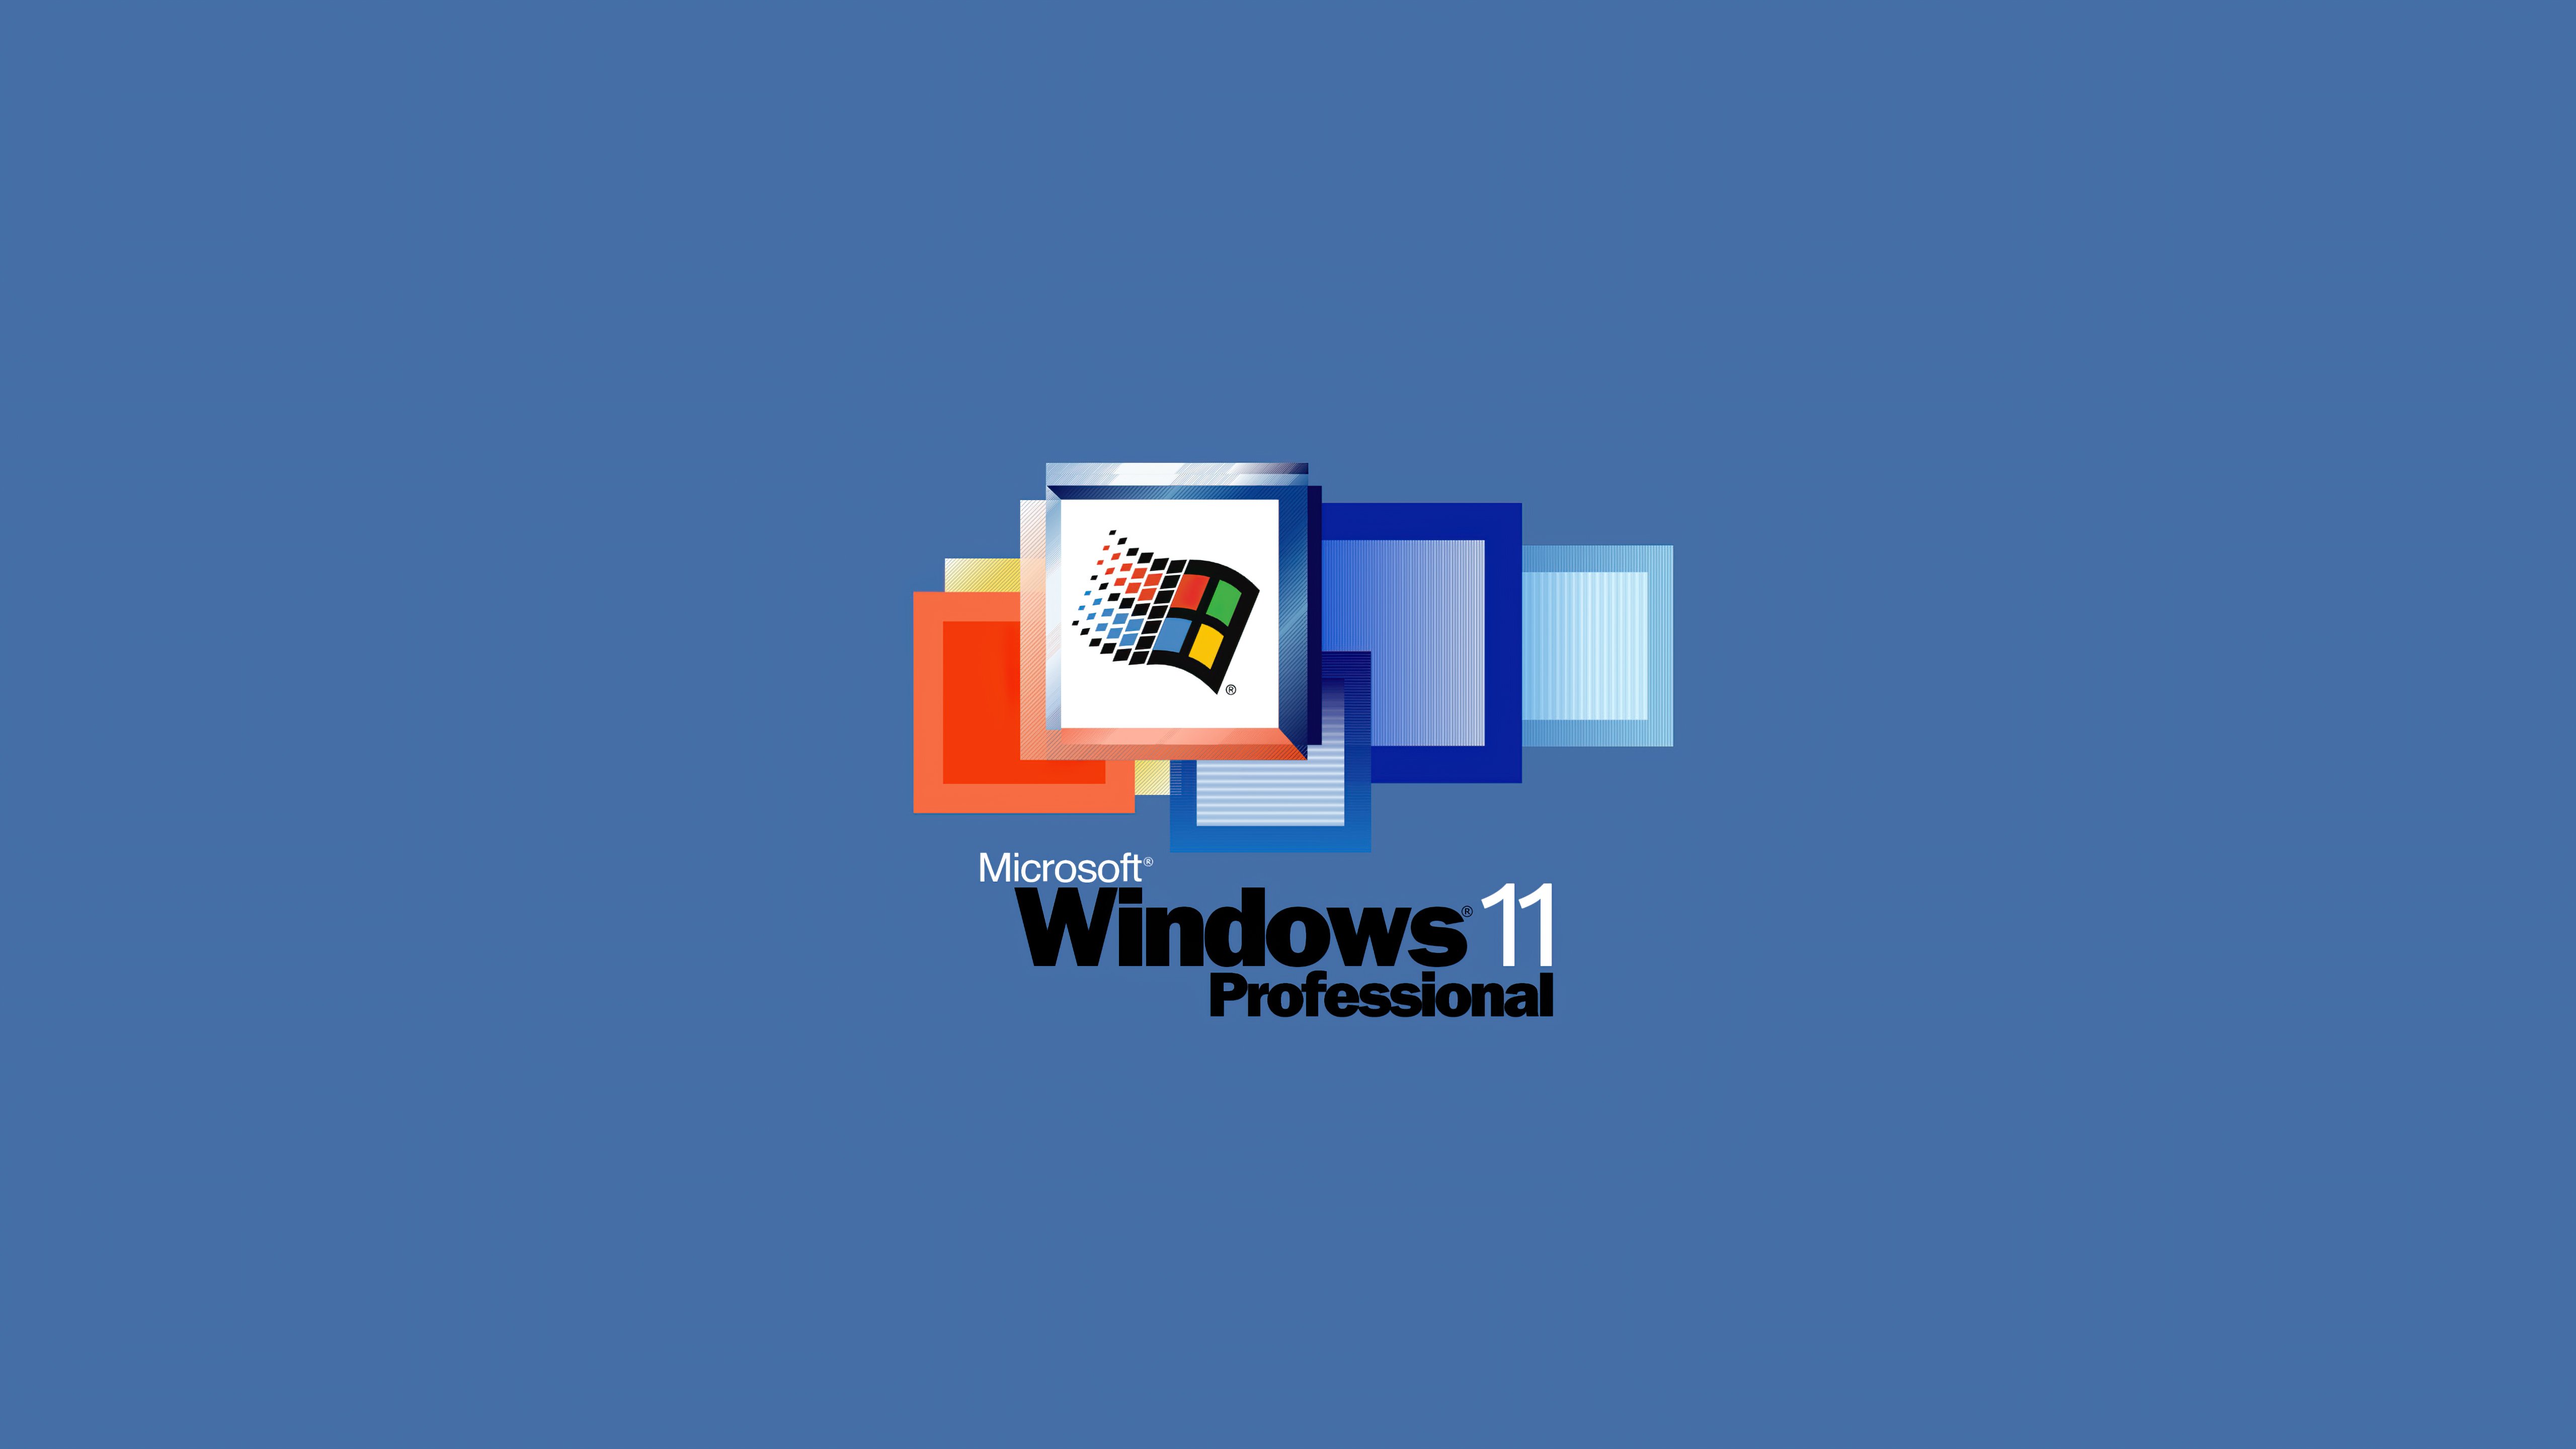 Windows 11 Professional Wallpaper 5k Ultra HD ID:9730